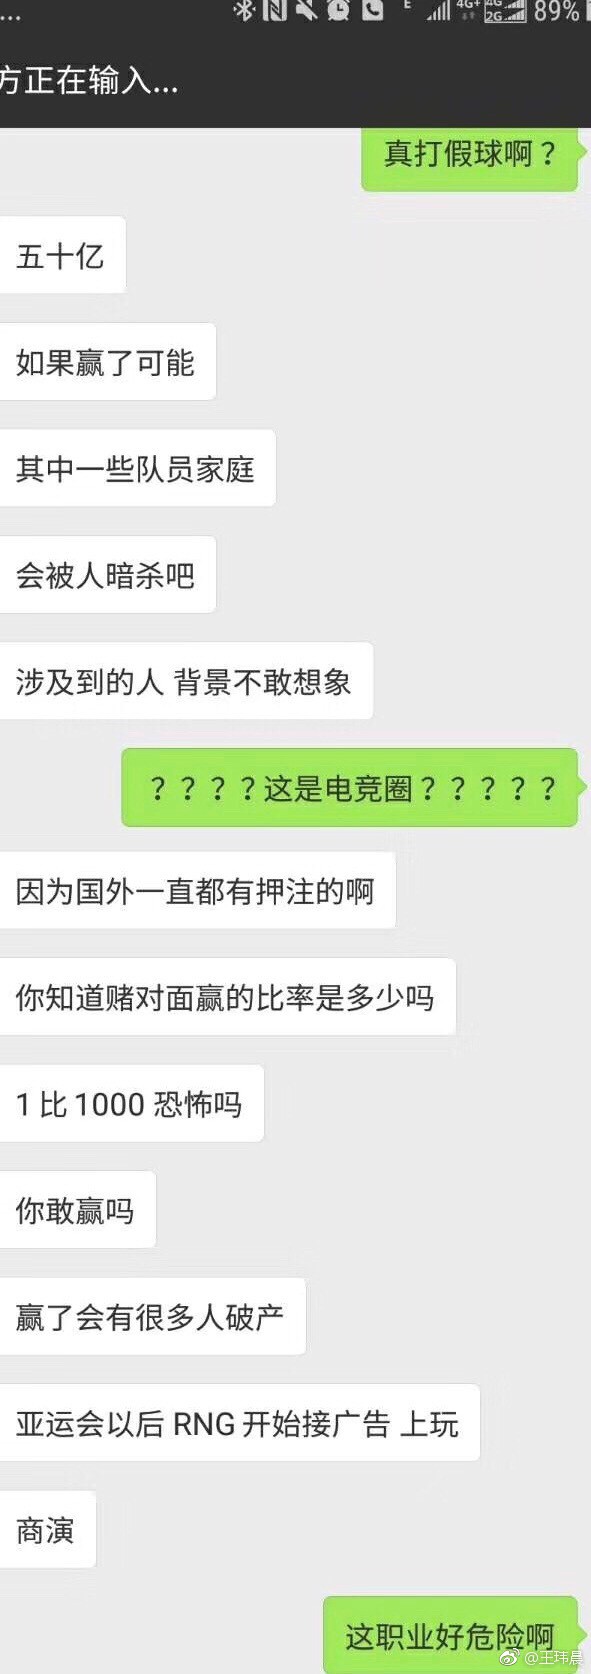 Quá sốc vì thất bại, cộng đồng LMHT Trung Quốc tố cáo RNG cố tình thua trong trận đấu với G2 Esports - Ảnh 2.